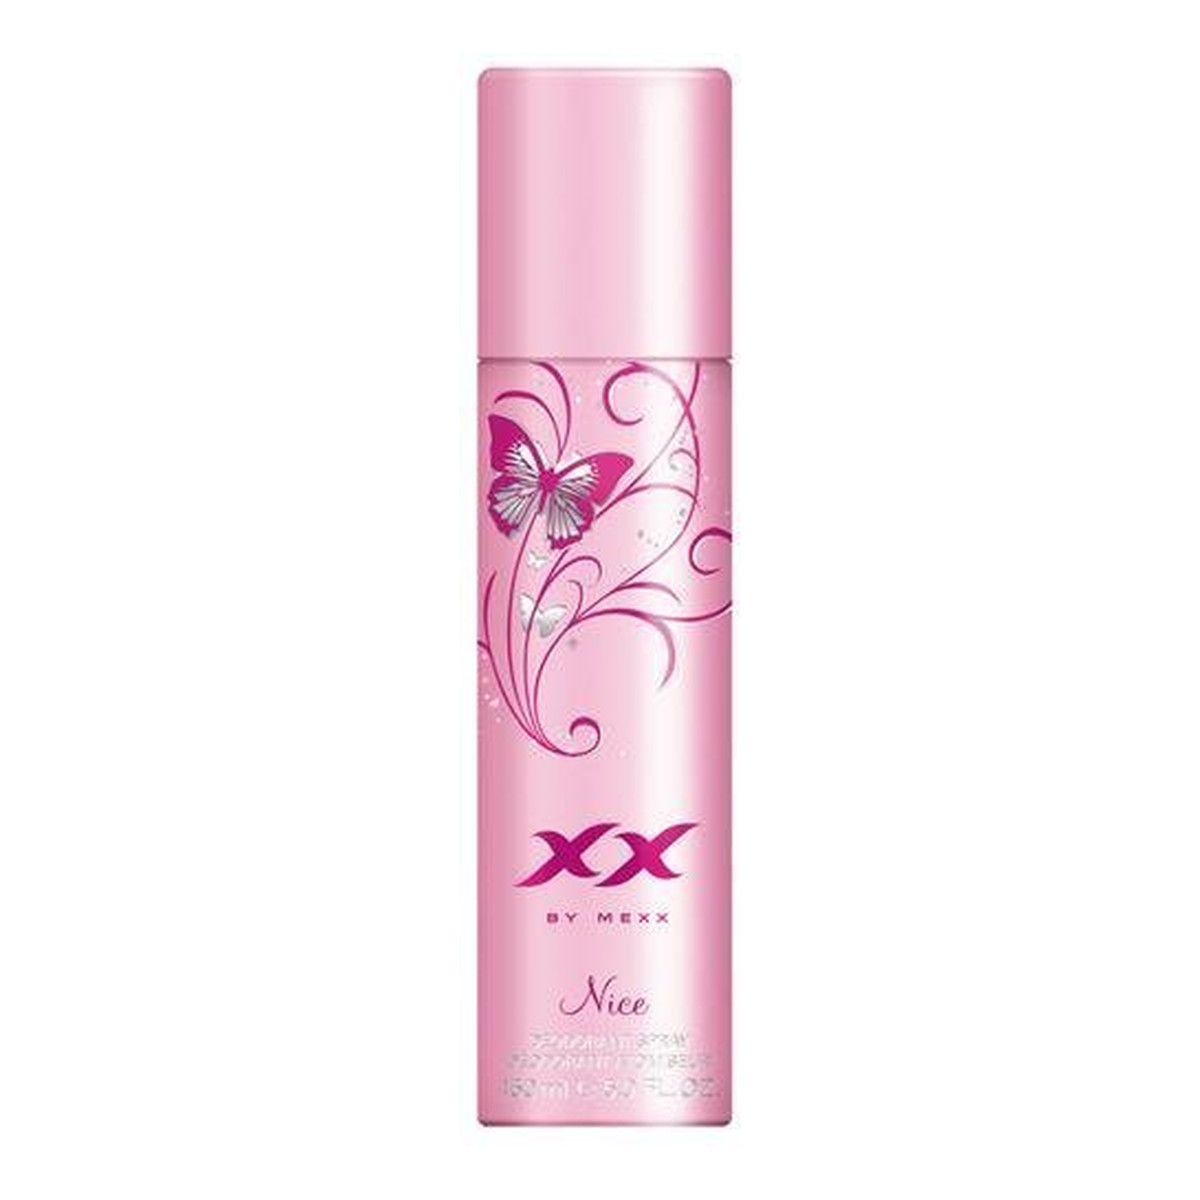 Mexx XX by Mexx Nice Dezodorant perfumowany 150ml